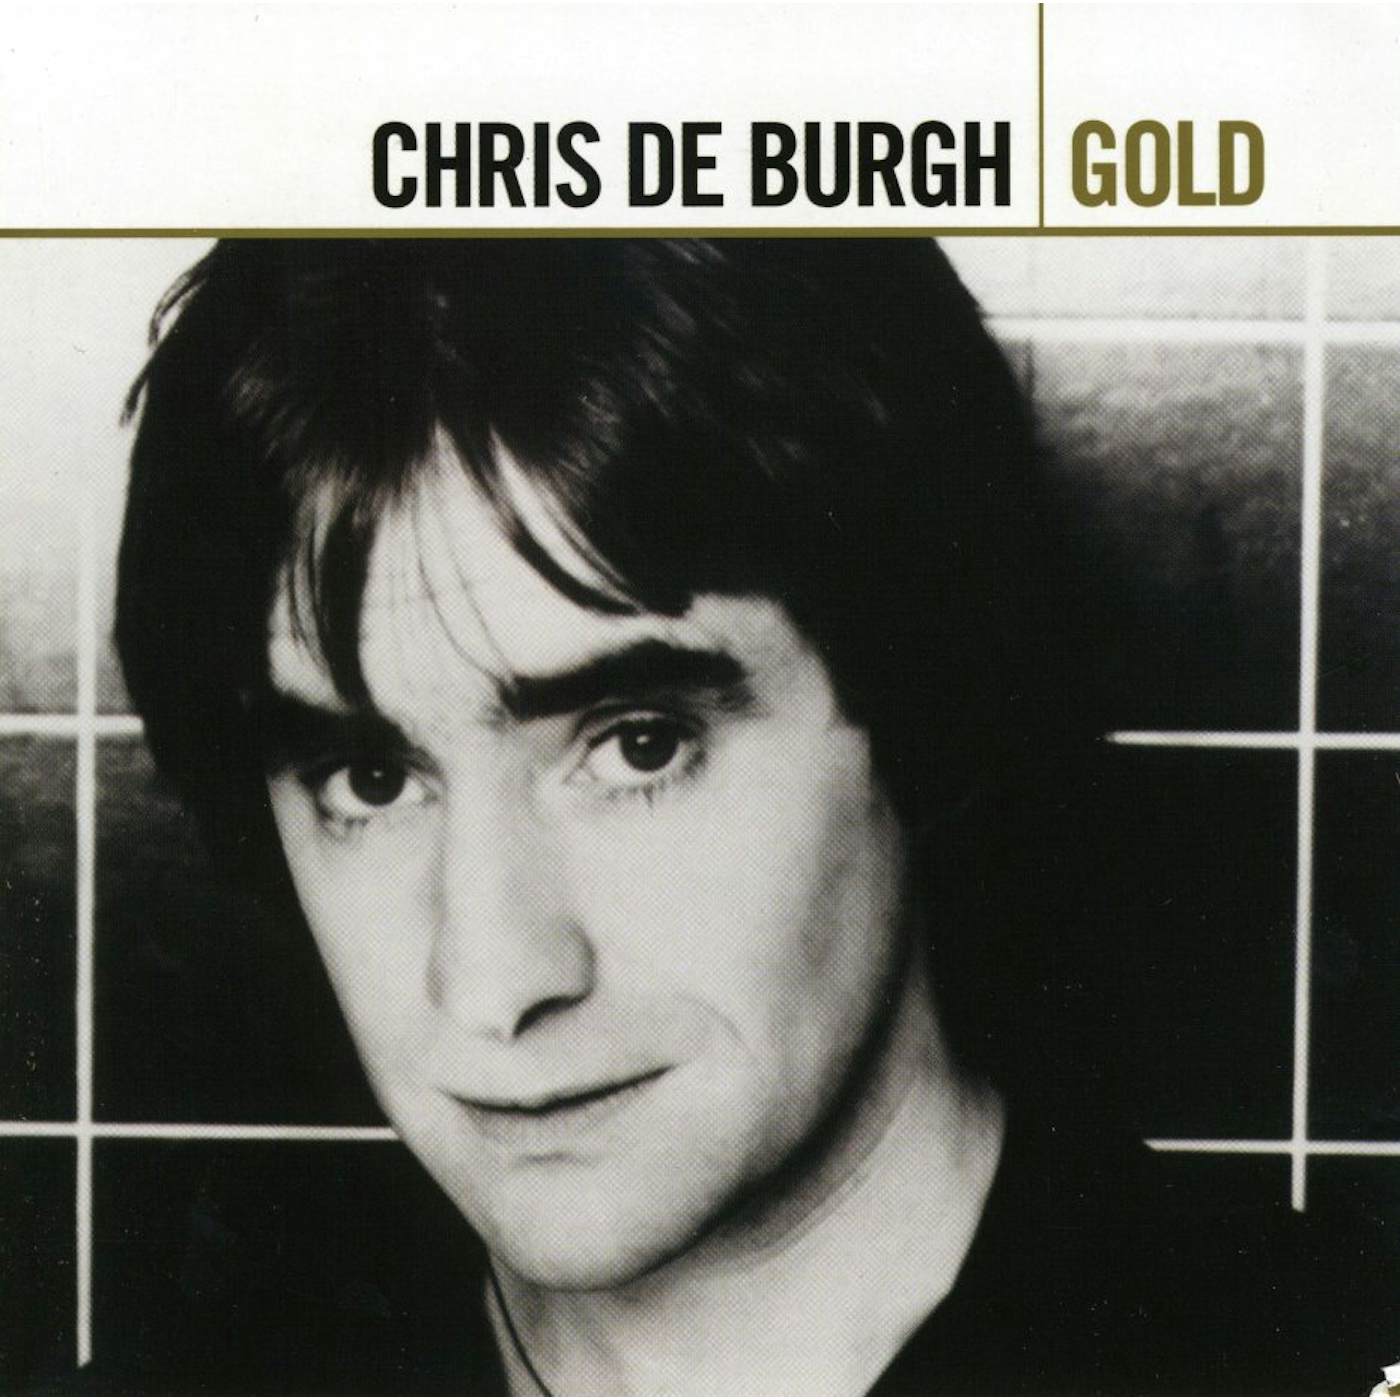 Chris de Burgh GOLD CD